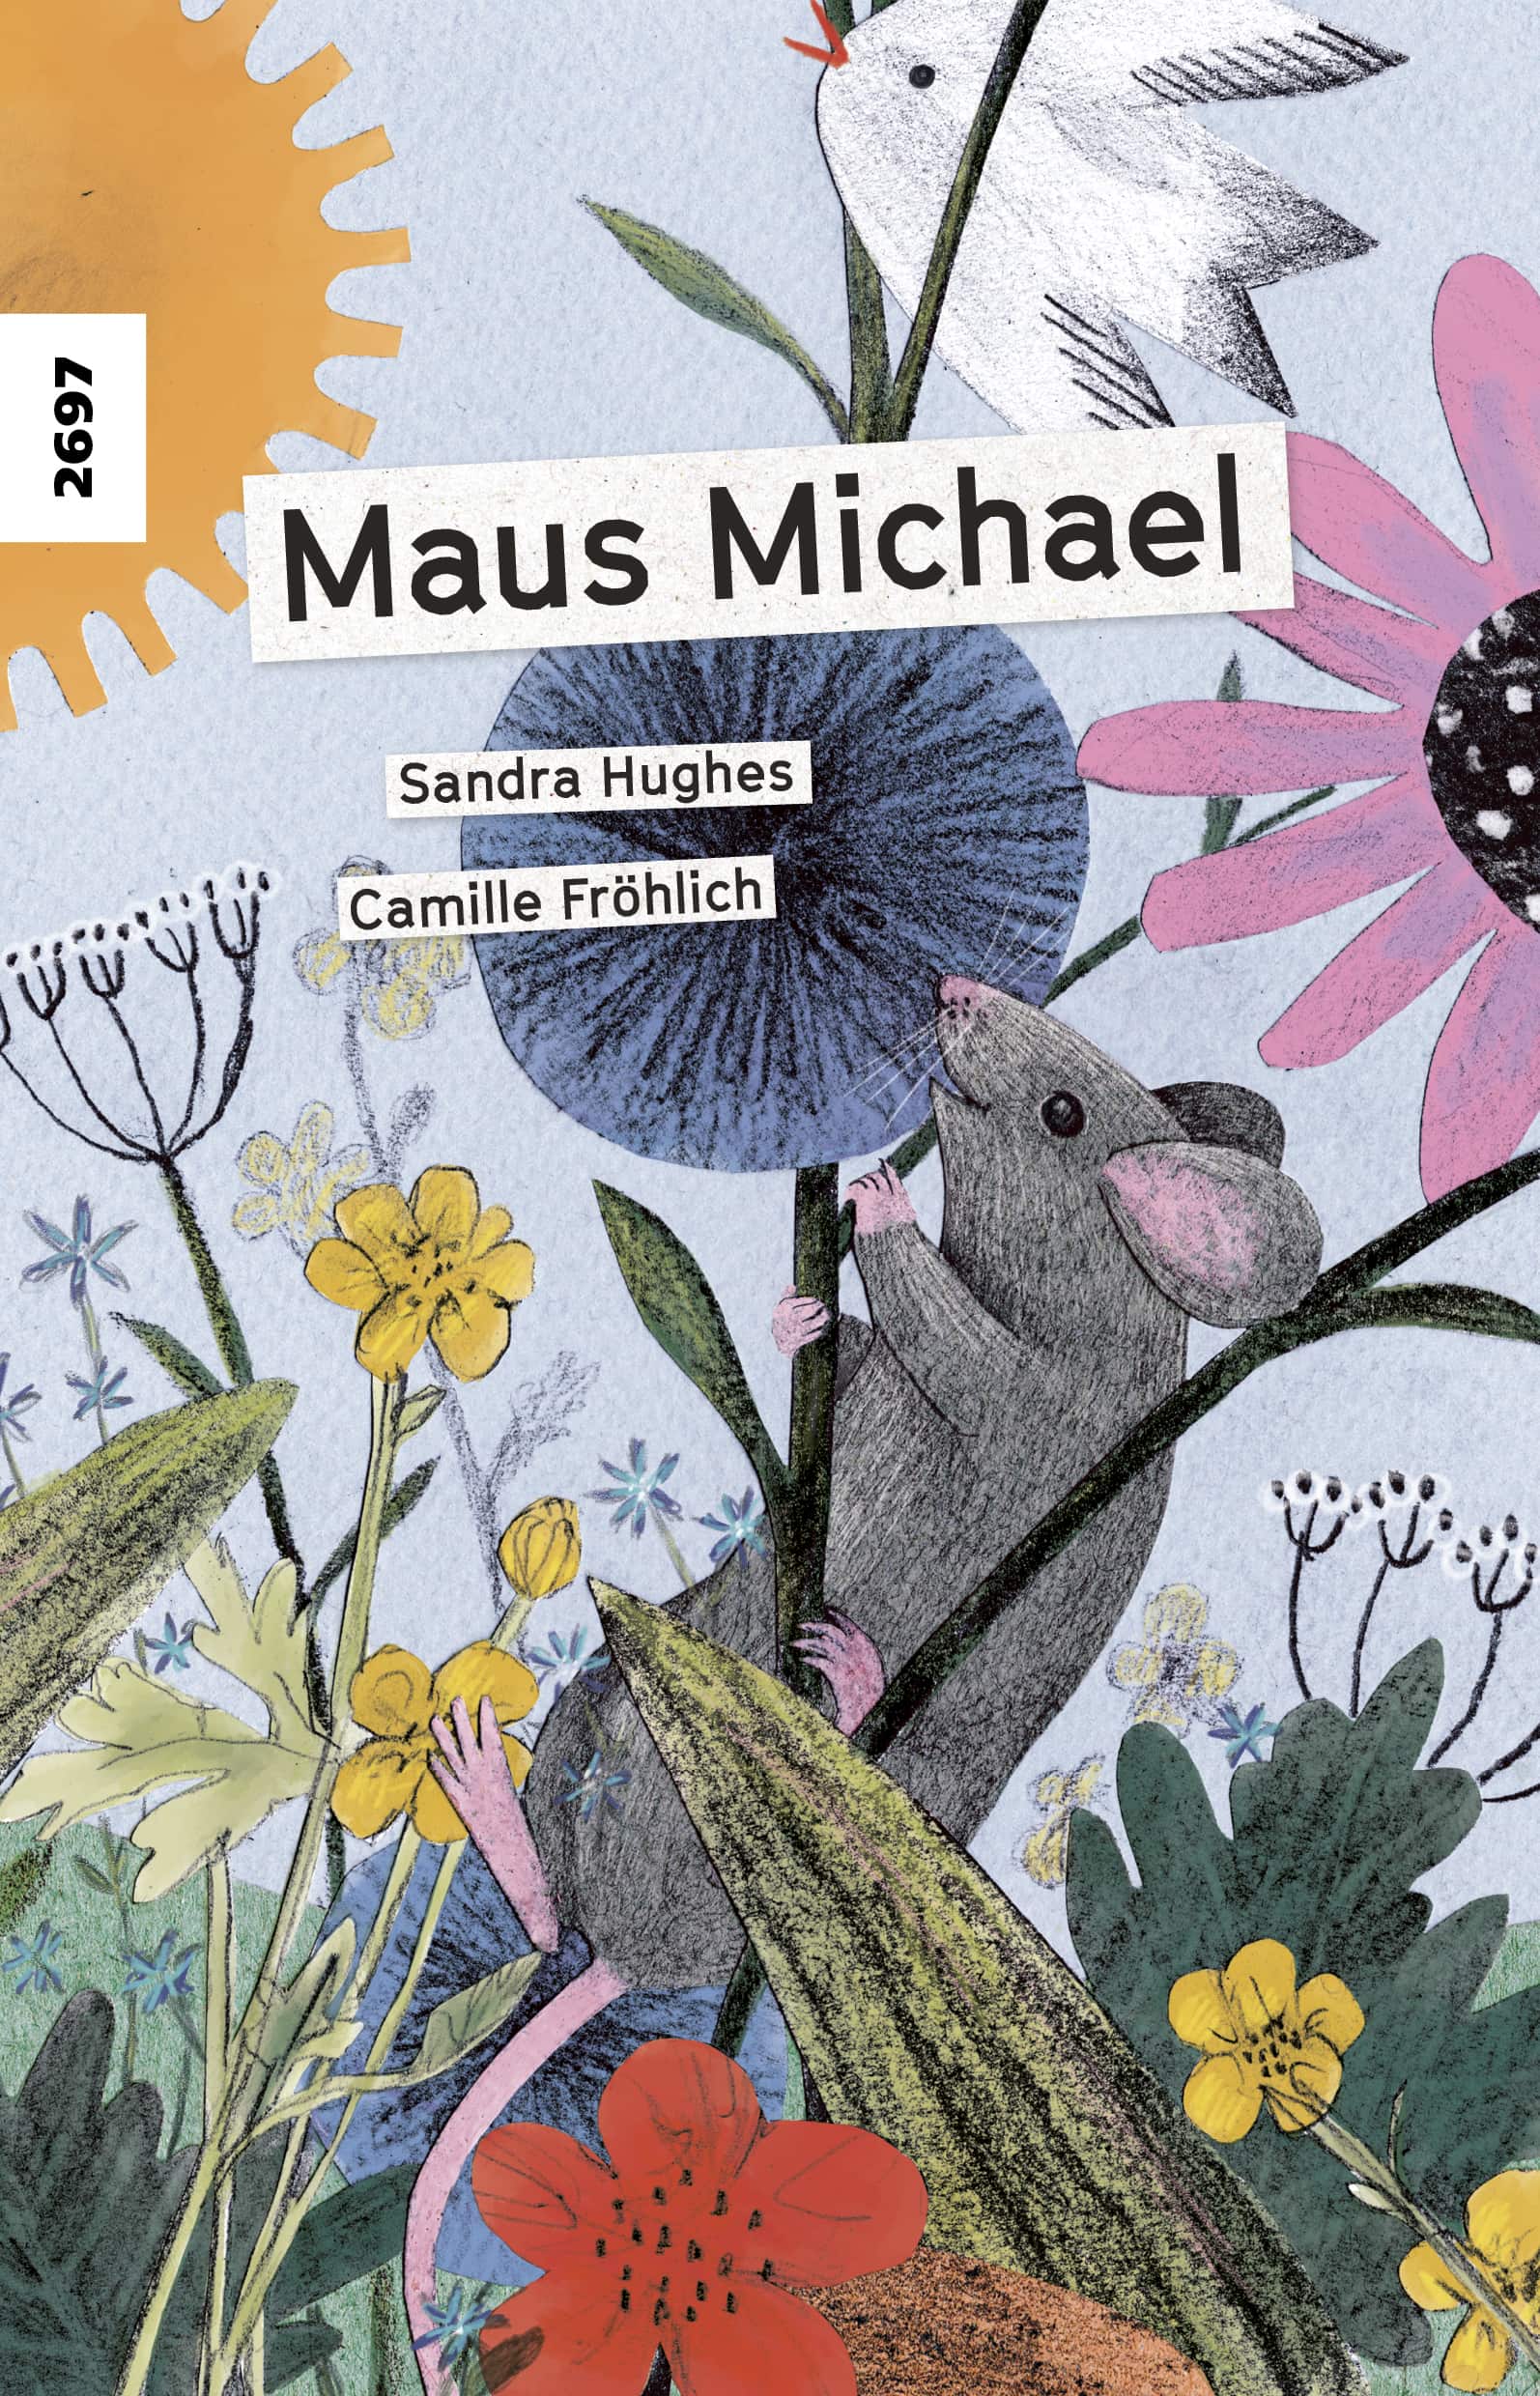 Maus Michael, ein Kinderbuch von Sandra Hughes, Illustration von Camille Froehlich, SJW Verlag, Tiere, Erstlesetext